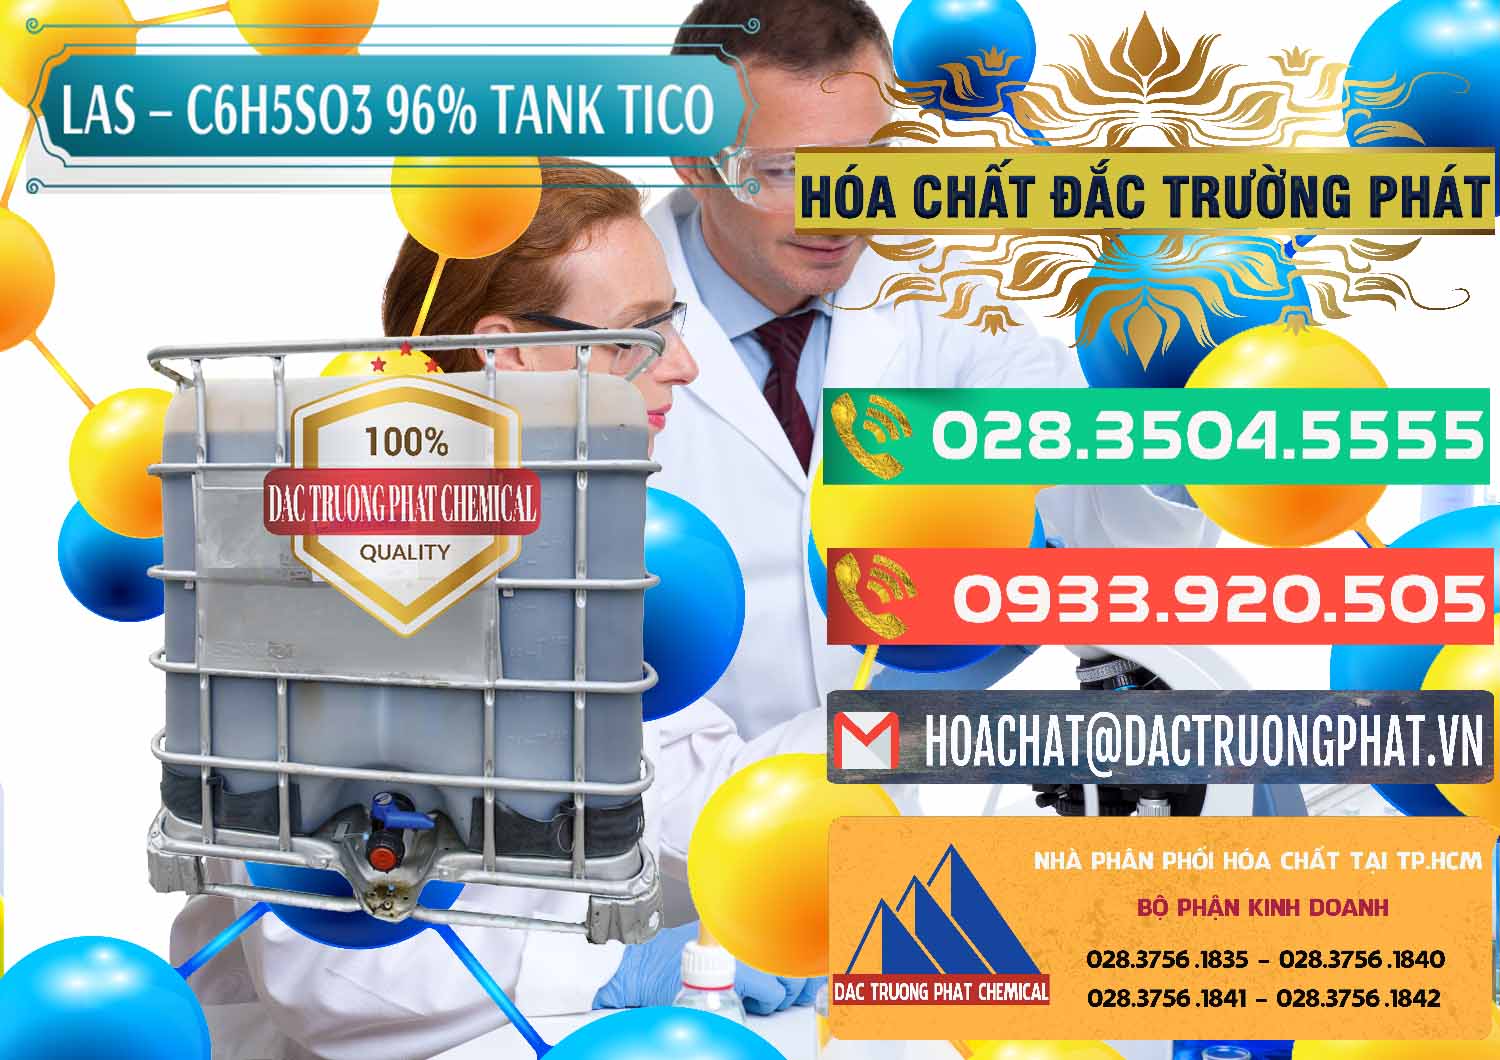 Đơn vị chuyên bán - cung cấp Chất tạo bọt Las P Tico Tank IBC Bồn Việt Nam - 0488 - Nhà phân phối & cung ứng hóa chất tại TP.HCM - congtyhoachat.com.vn